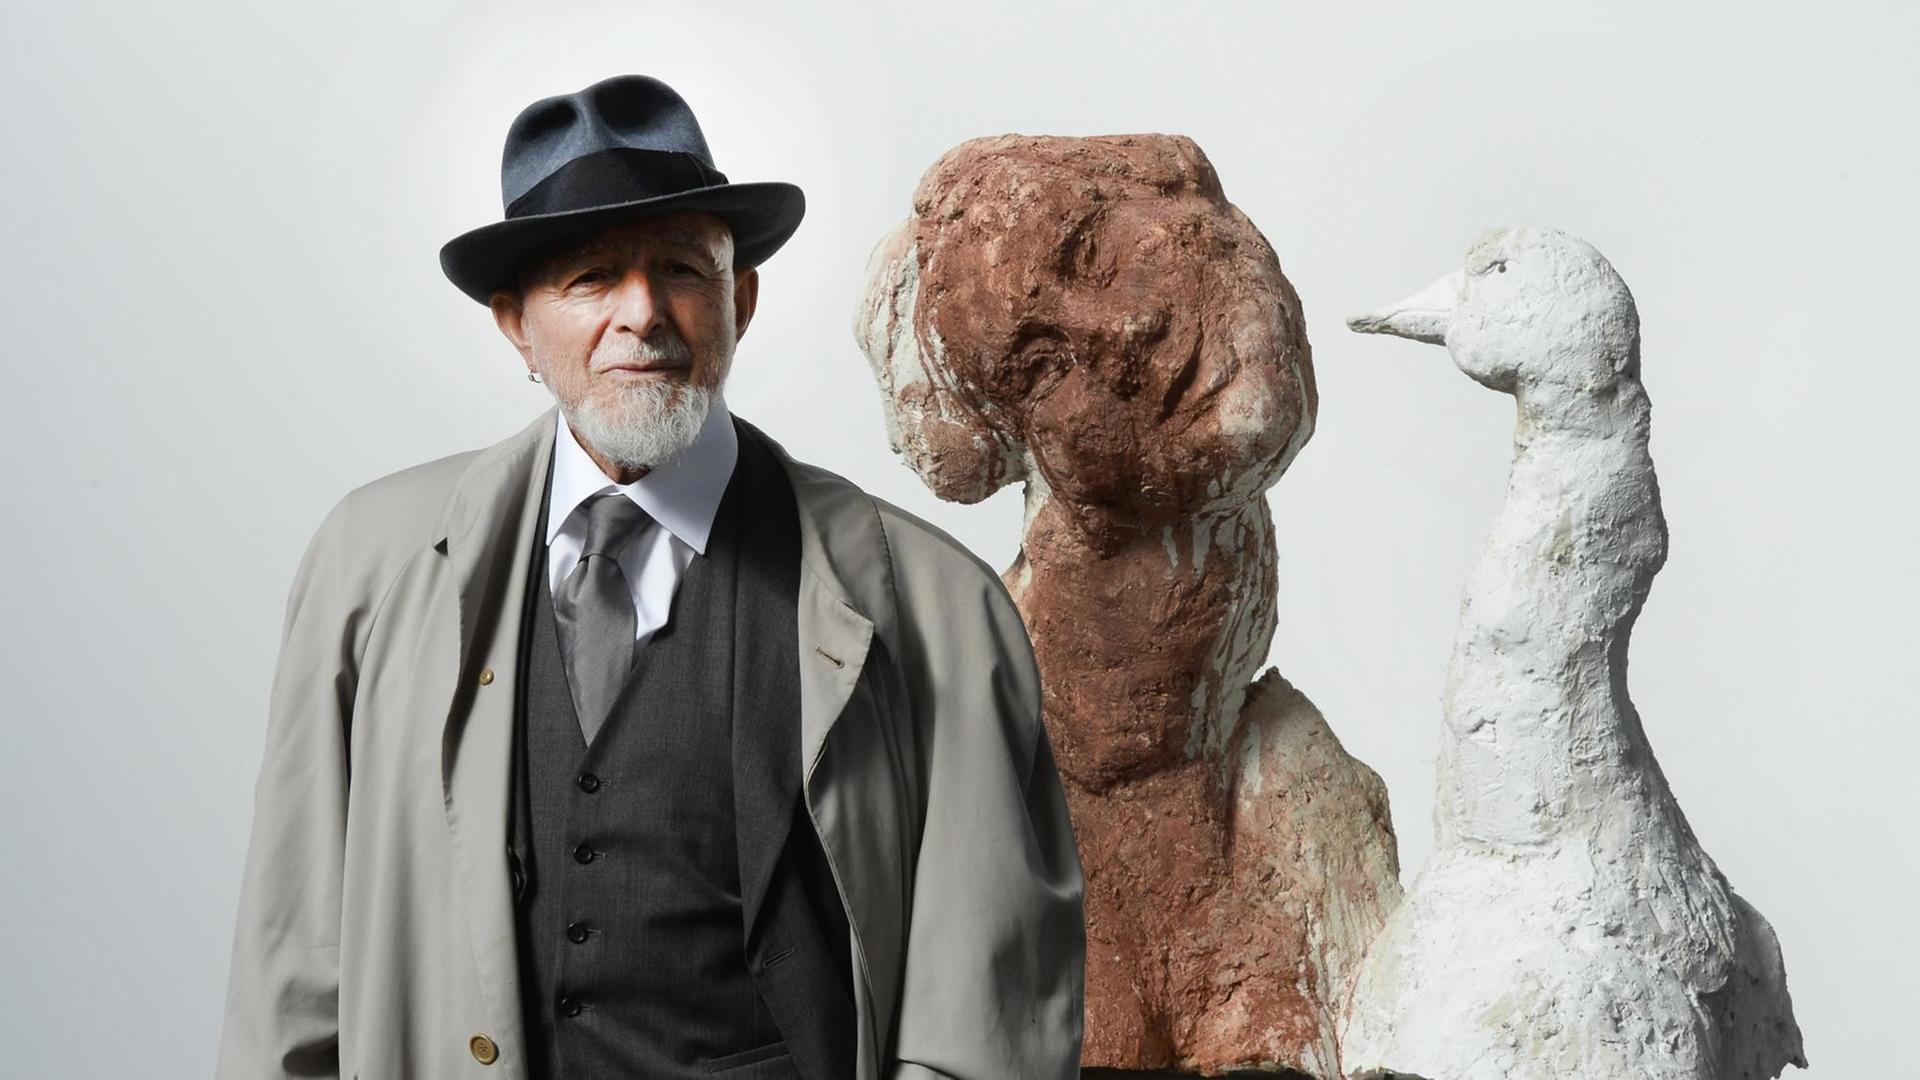 Der Künstler Markus Lüpertz steht vor einem Modell seiner Skulptur "LEDA".